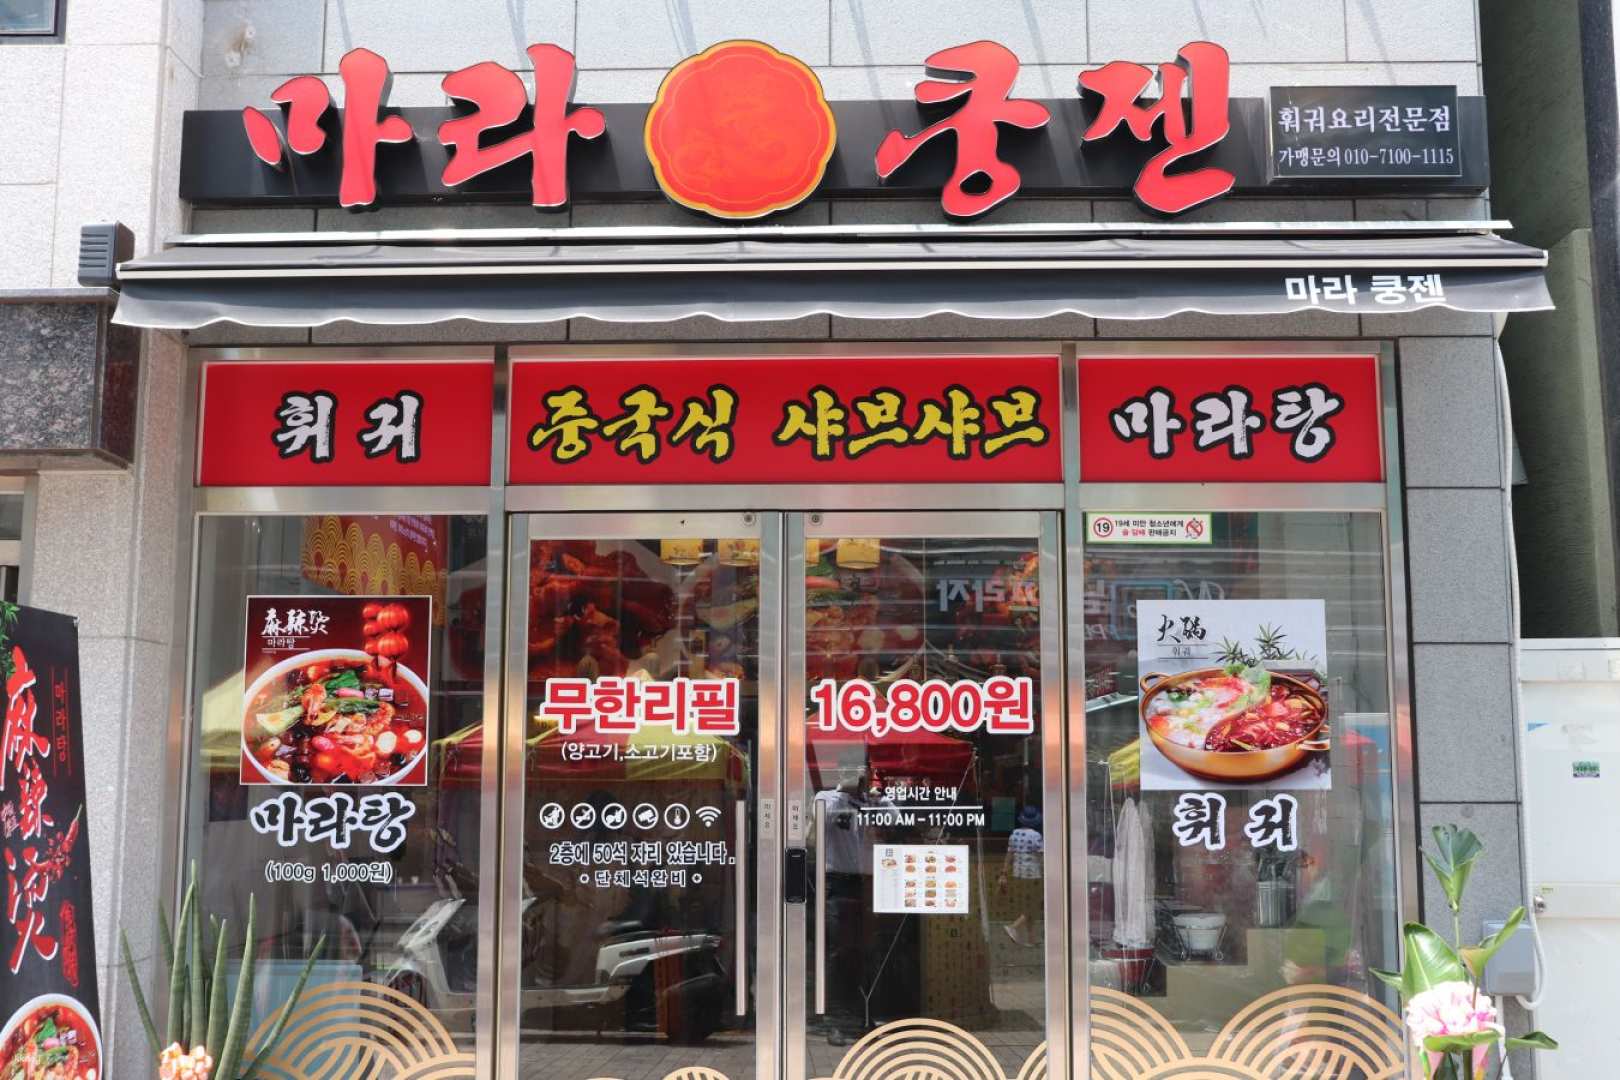 韓國-釜山麻辣空間| 火鍋吃到飽